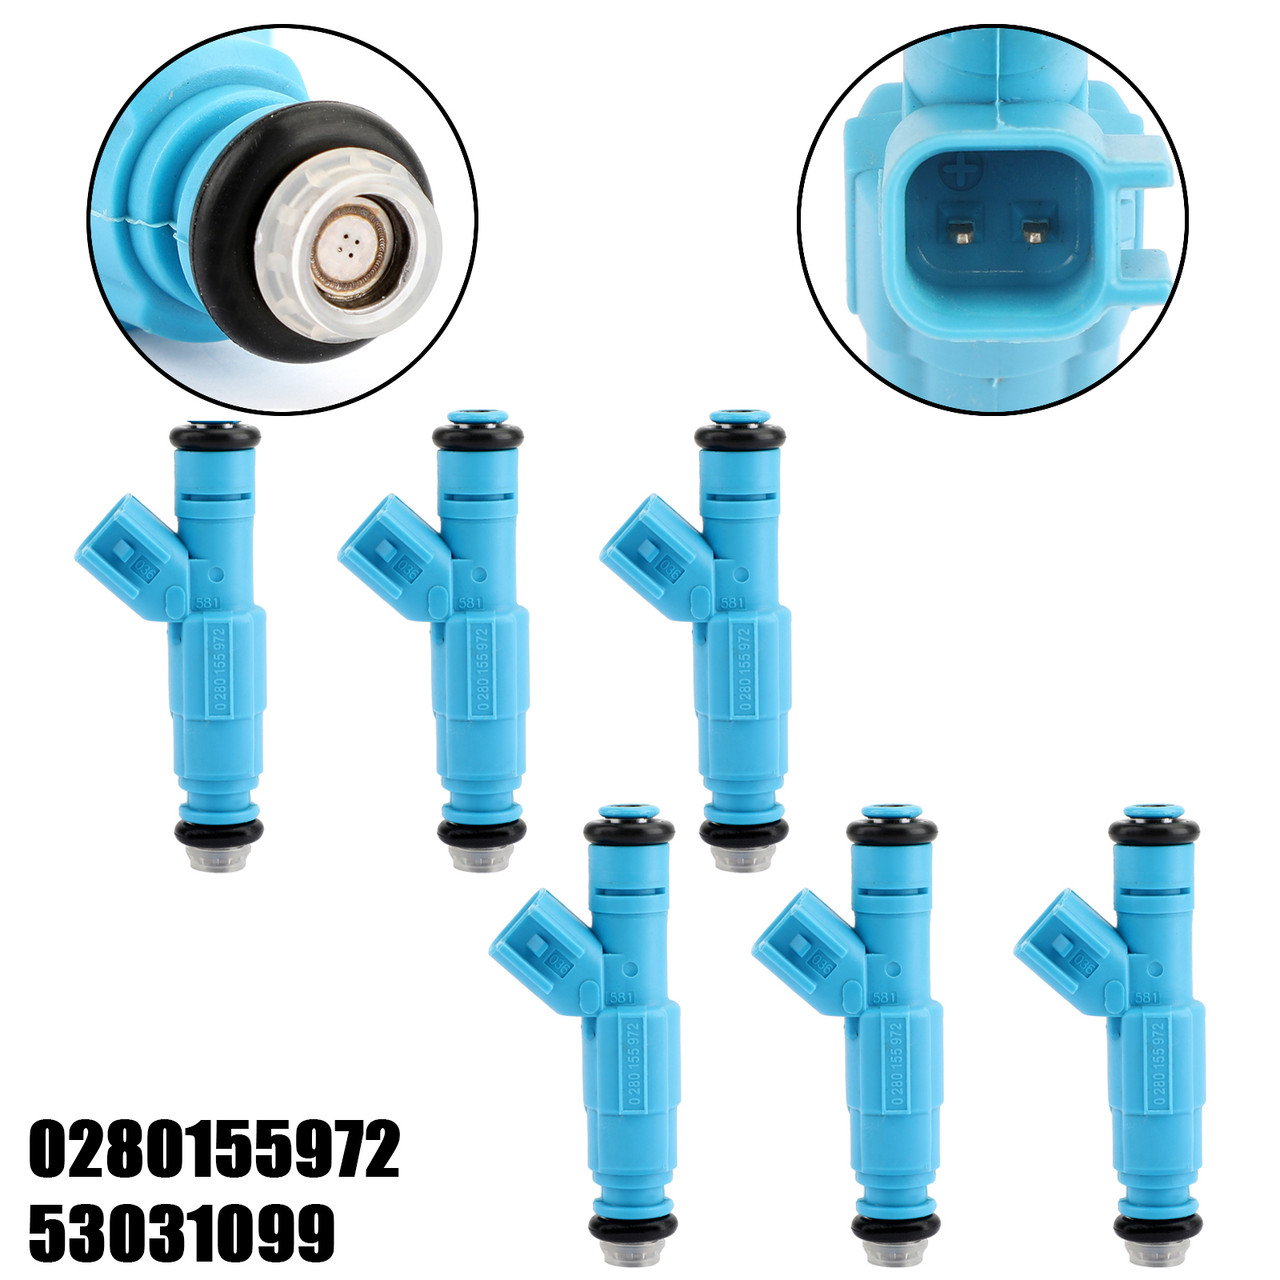 6PCS fuel injectors 0280155972 For Liberty 3.7L Ram 1500 3.7L 02-03 Blue